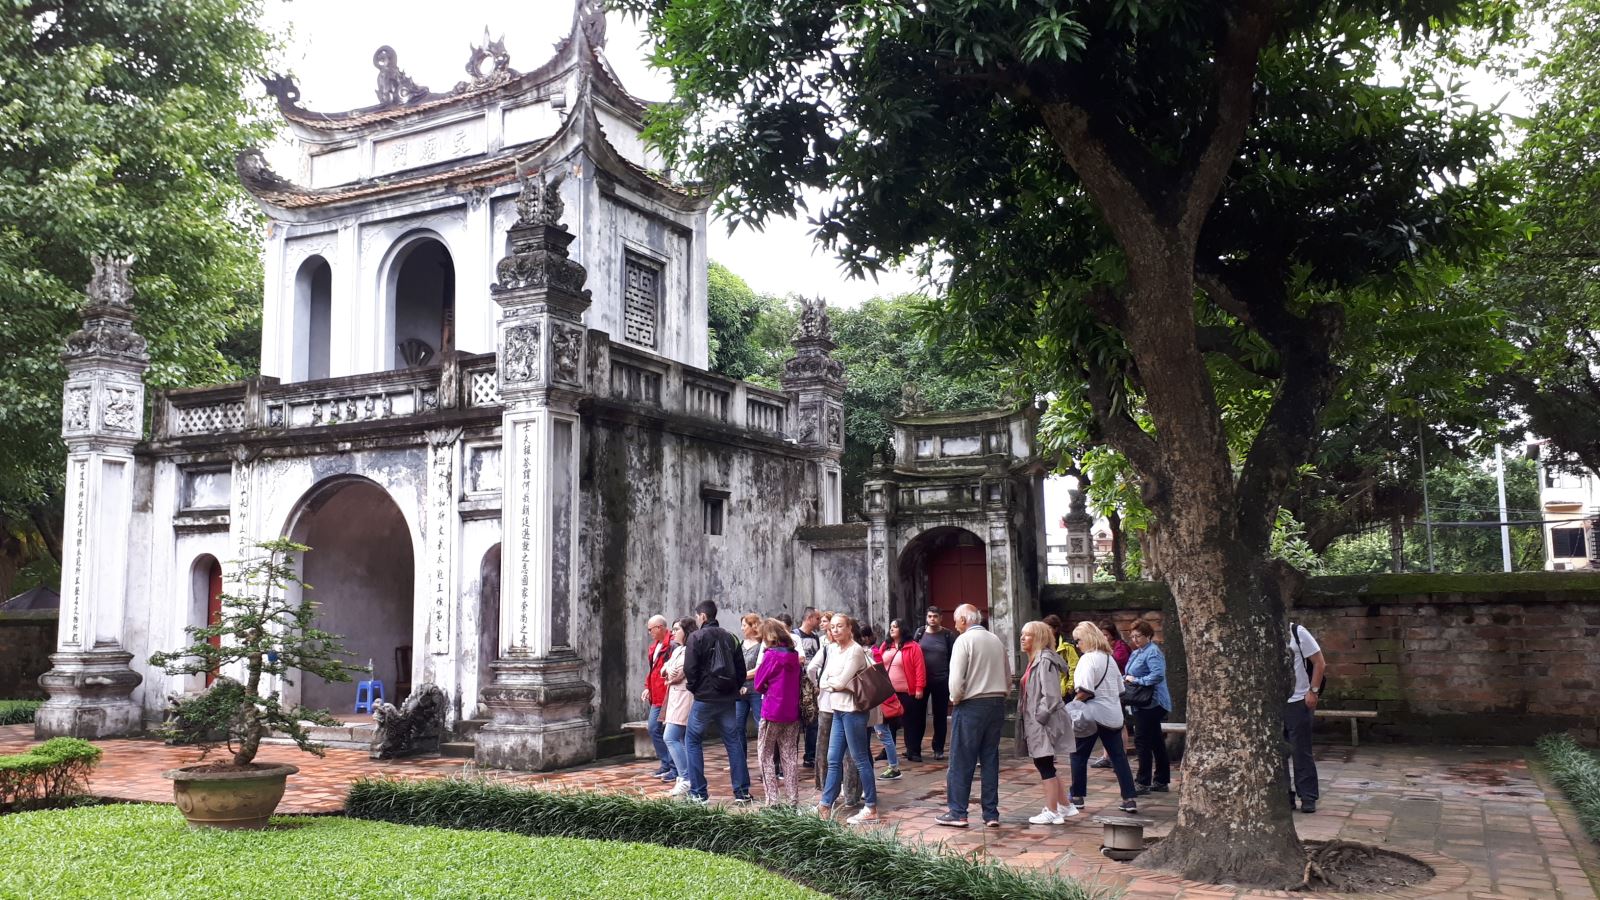 Quảng bá du lịch Hà Nội trên CNN sẽ giúp những người xem hiểu rõ hơn về vẻ đẹp nổi bật của thủ đô Việt Nam. Cùng với những hình ảnh tuyệt đẹp trong bản tin, du khách sẽ thực sự muốn tìm hiểu và khám phá những điểm đến thú vị của thành phố này.